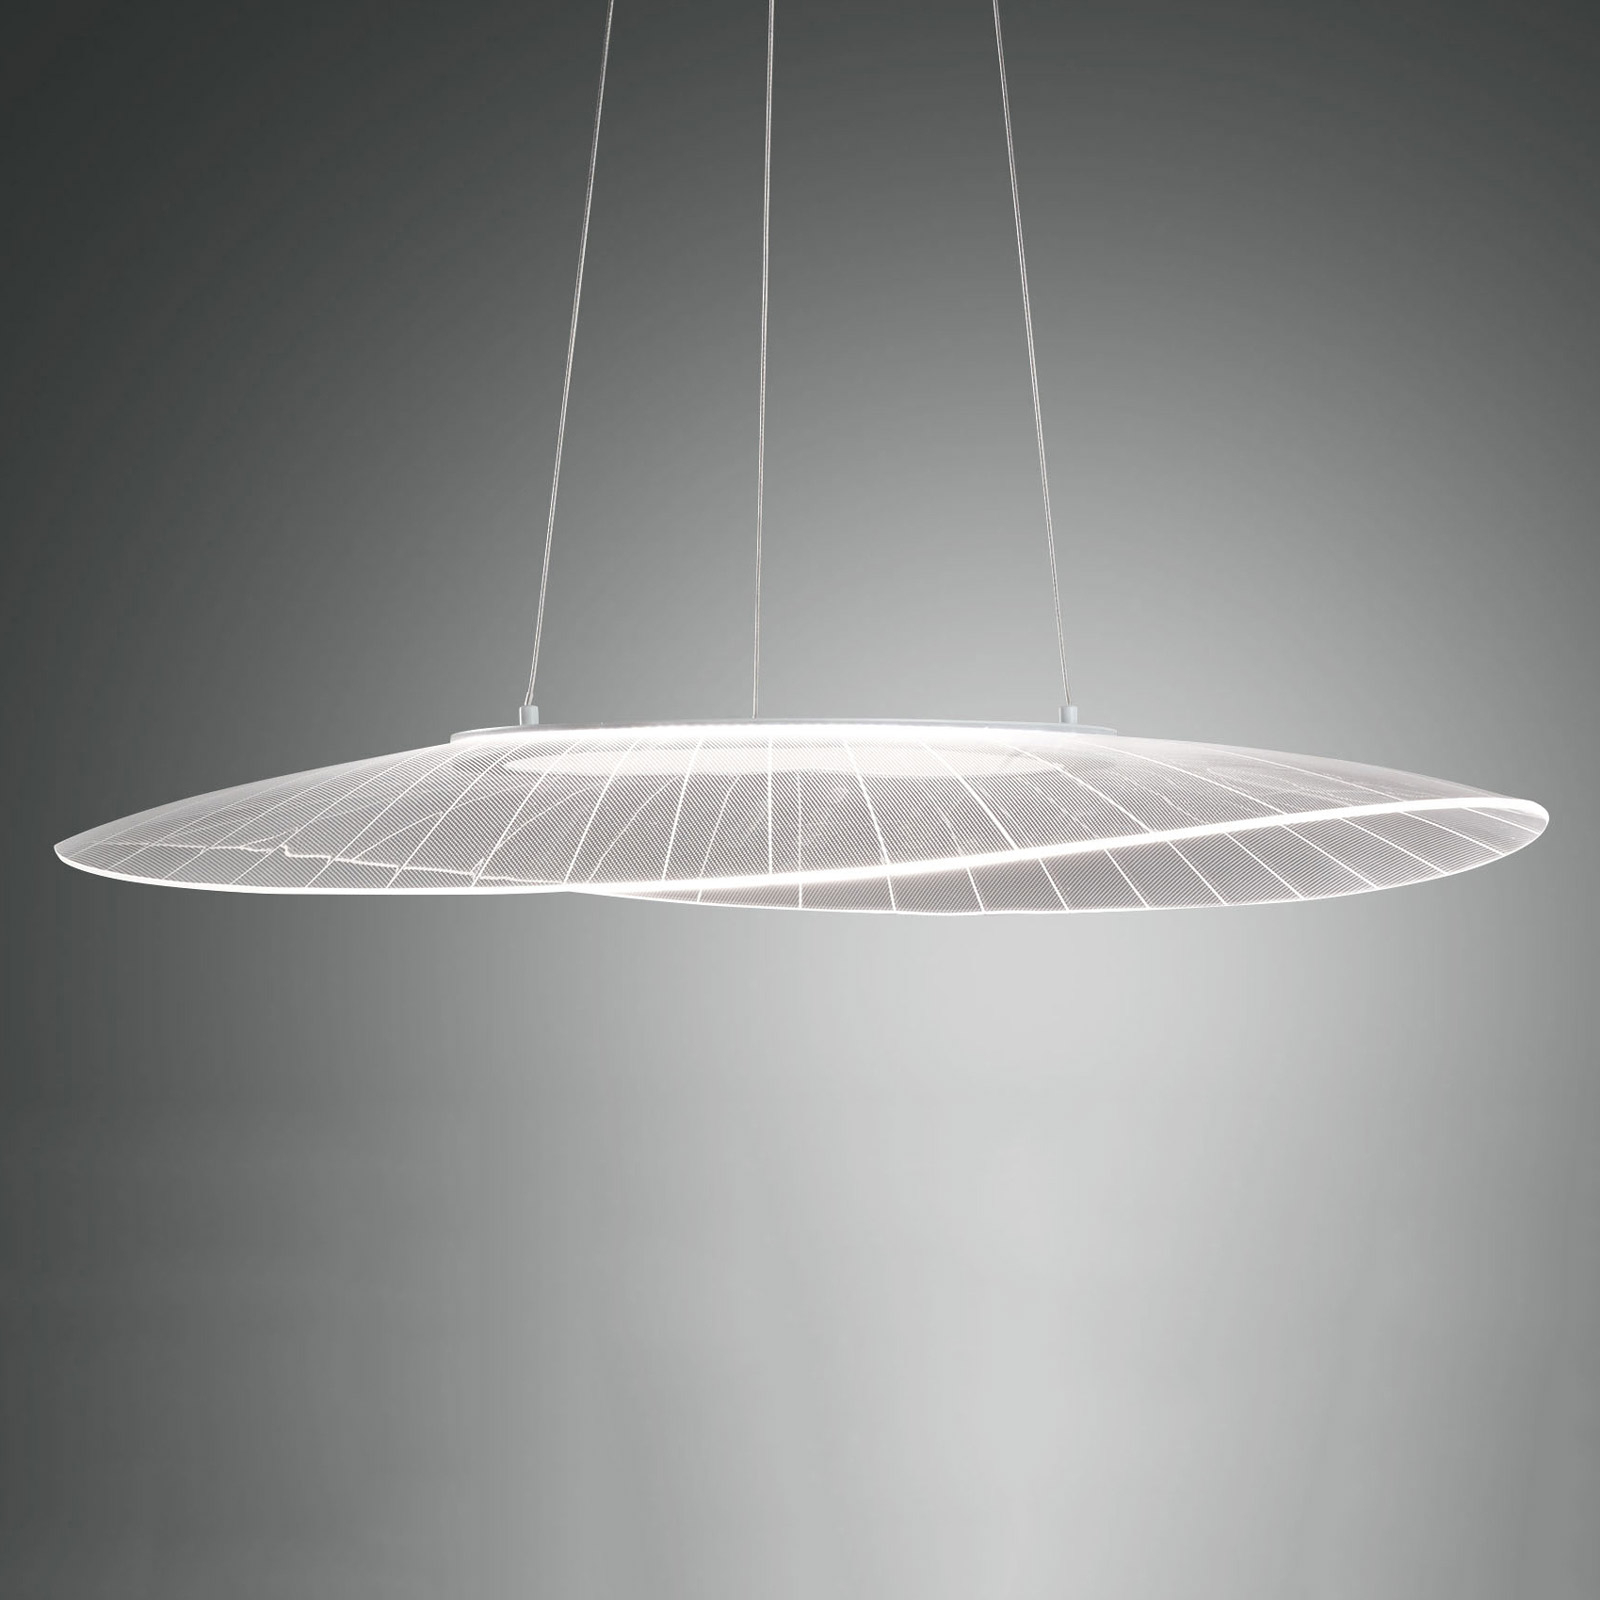 Lampa wisząca LED Vela, biała, Oval, 78 cm x 55 cm